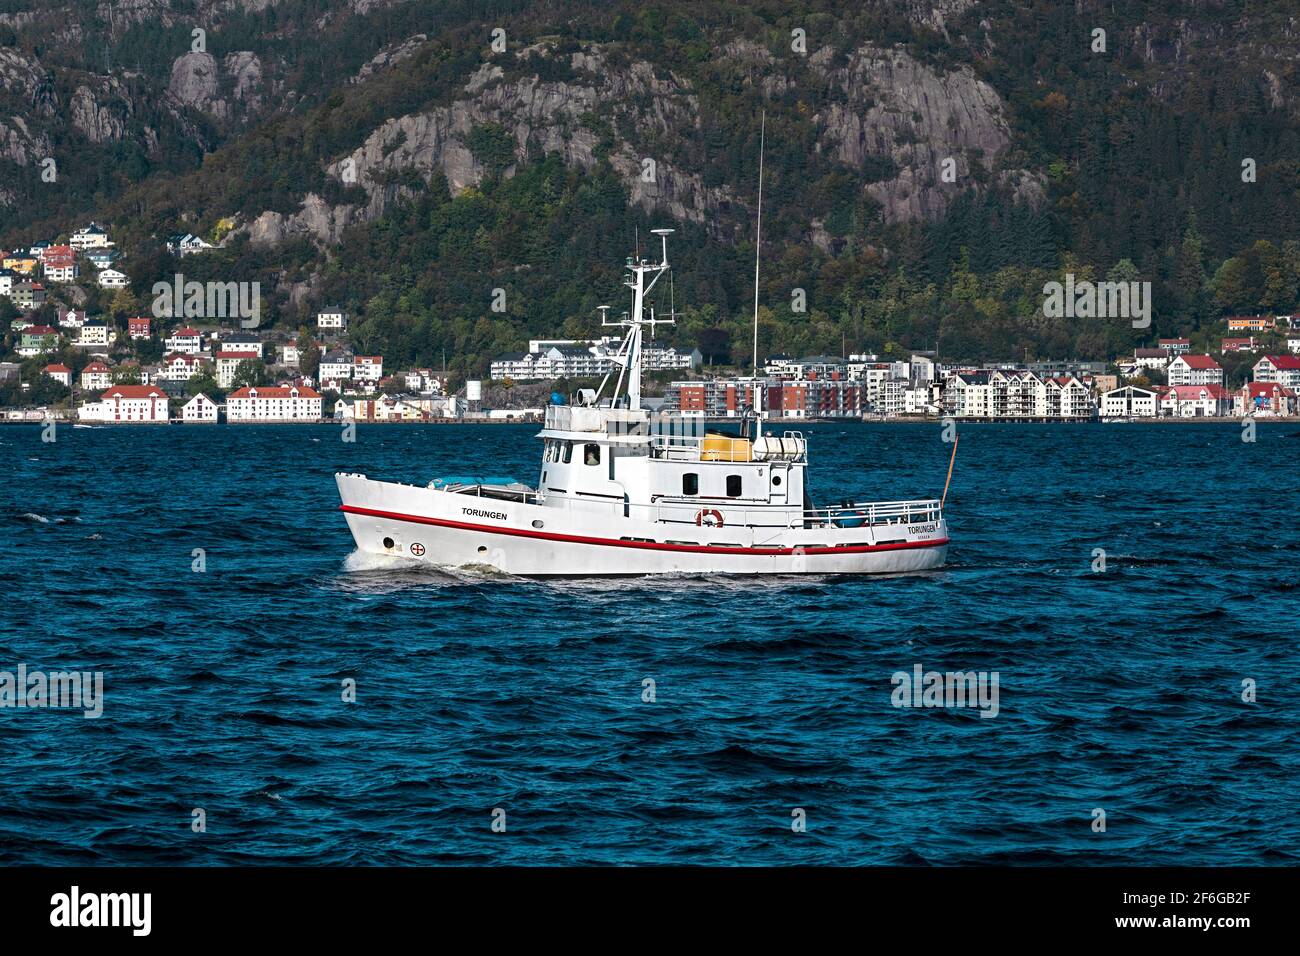 Veteran SAR vessel RS63 Torungen (built 1960 for Redningselskapet), now a pleasure craft. At Byfjorden outside  port of Bergen, Norway Stock Photo